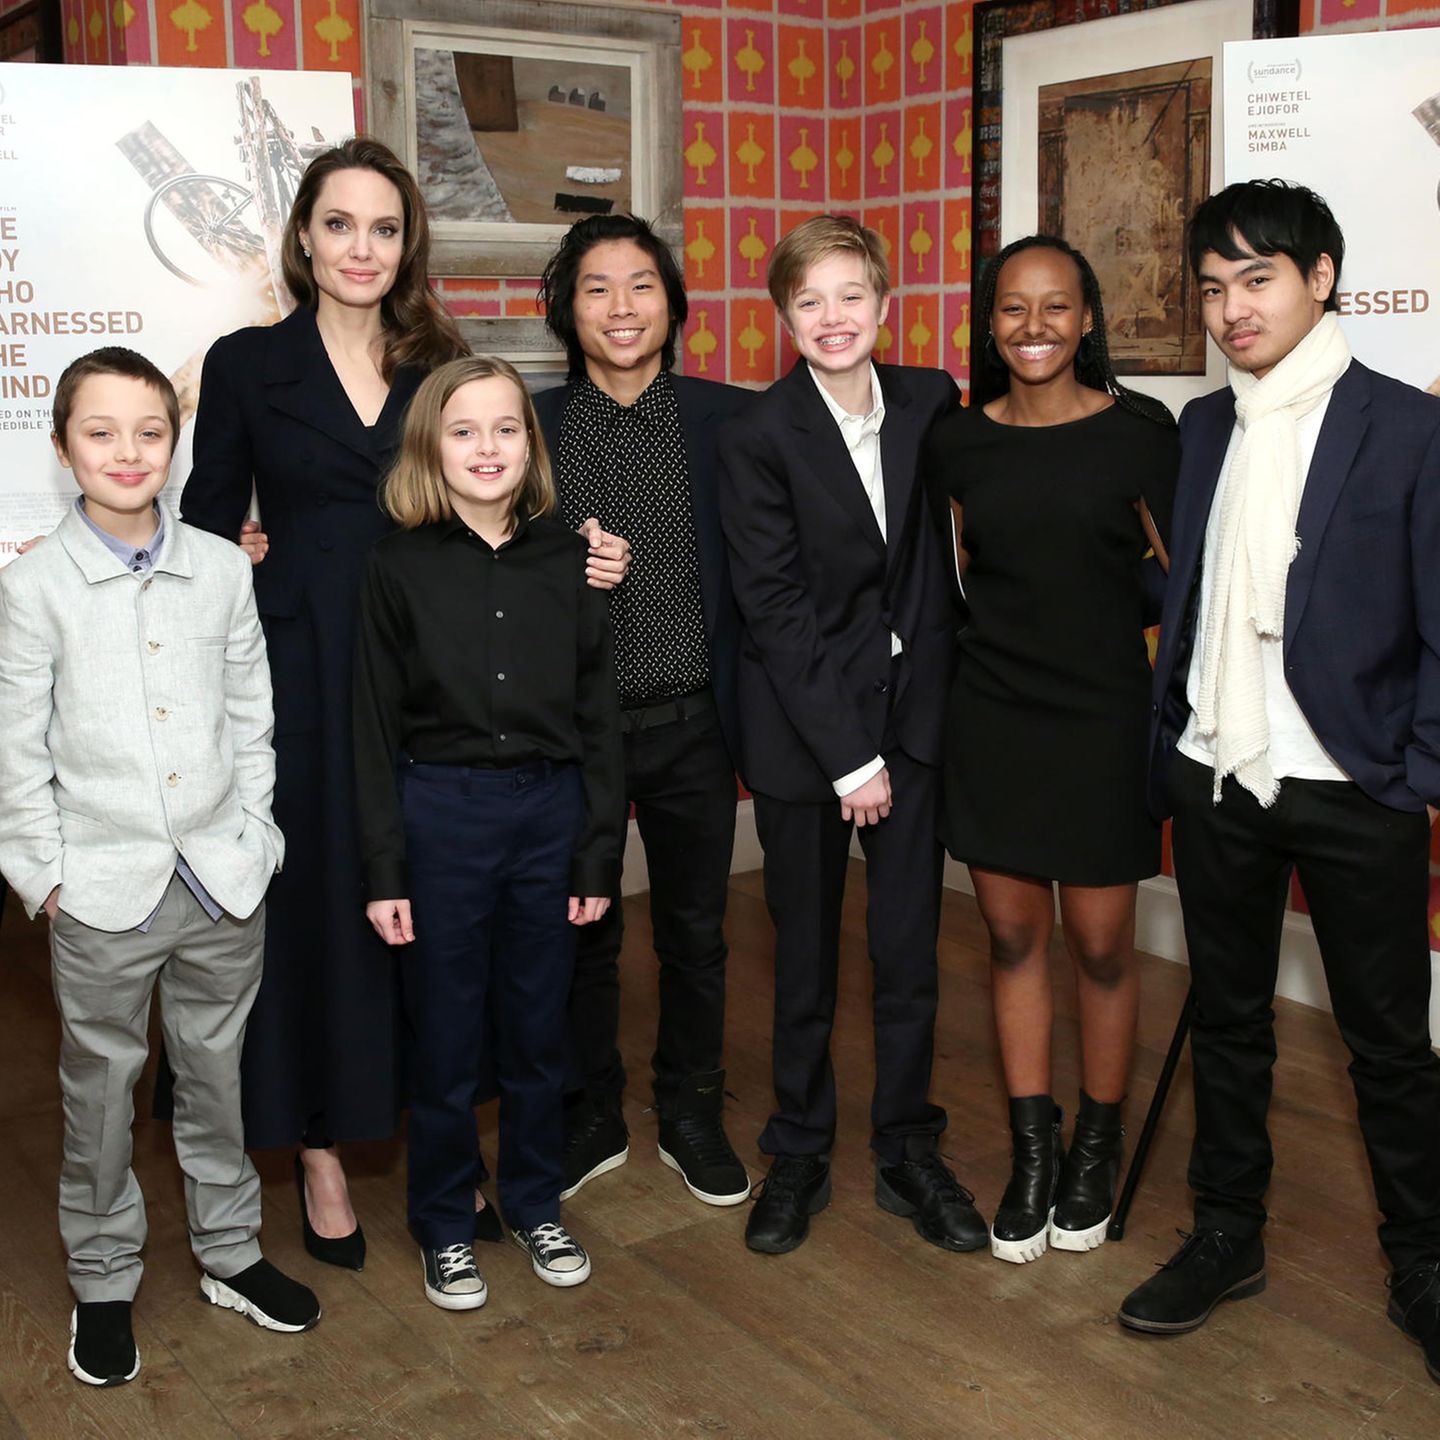 Familienglück international: Angelina Jolie und ihre sechs Kinder sind eine eingeschworene Truppe. Neben den drei leiblichen Kindern mit Exmann Brad Pitt ist die Schauspielerin und Regisseurin auch stolze Adoptivmutter von Maddox aus Kambodscha, Pax Thien aus Vietnam und Zahara aus Äthiopien.